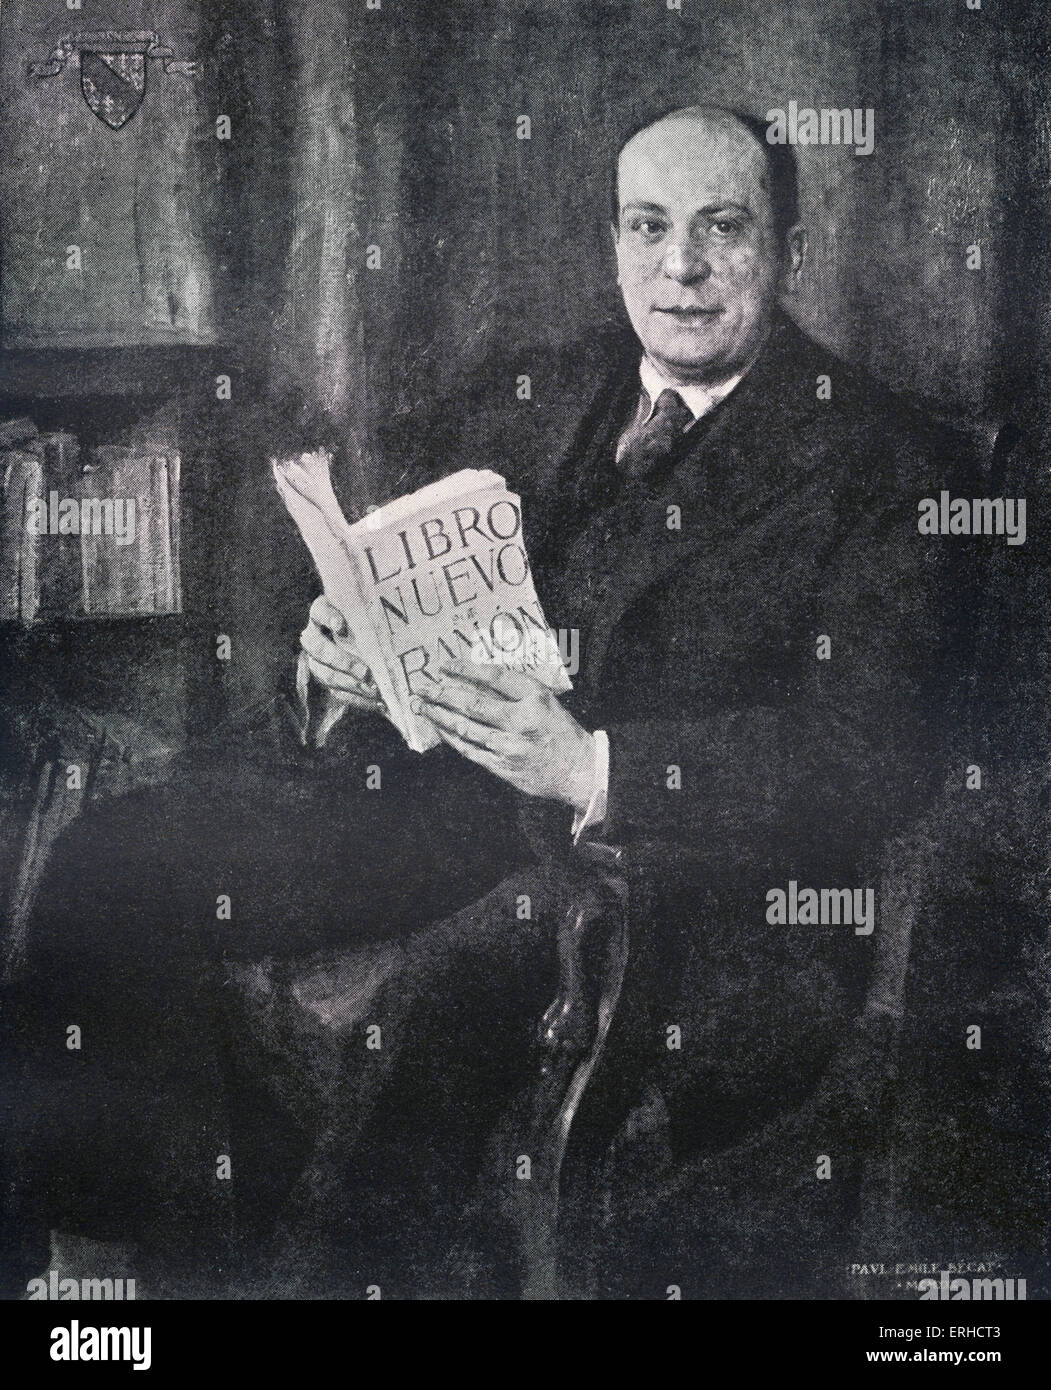 Valery Larbaud, sitzenden Porträt. Französischer Schriftsteller, Übersetzer und Kritiker, 29. August 1881 - 2. Februar 1957. Nach dem Gemälde von Stockfoto